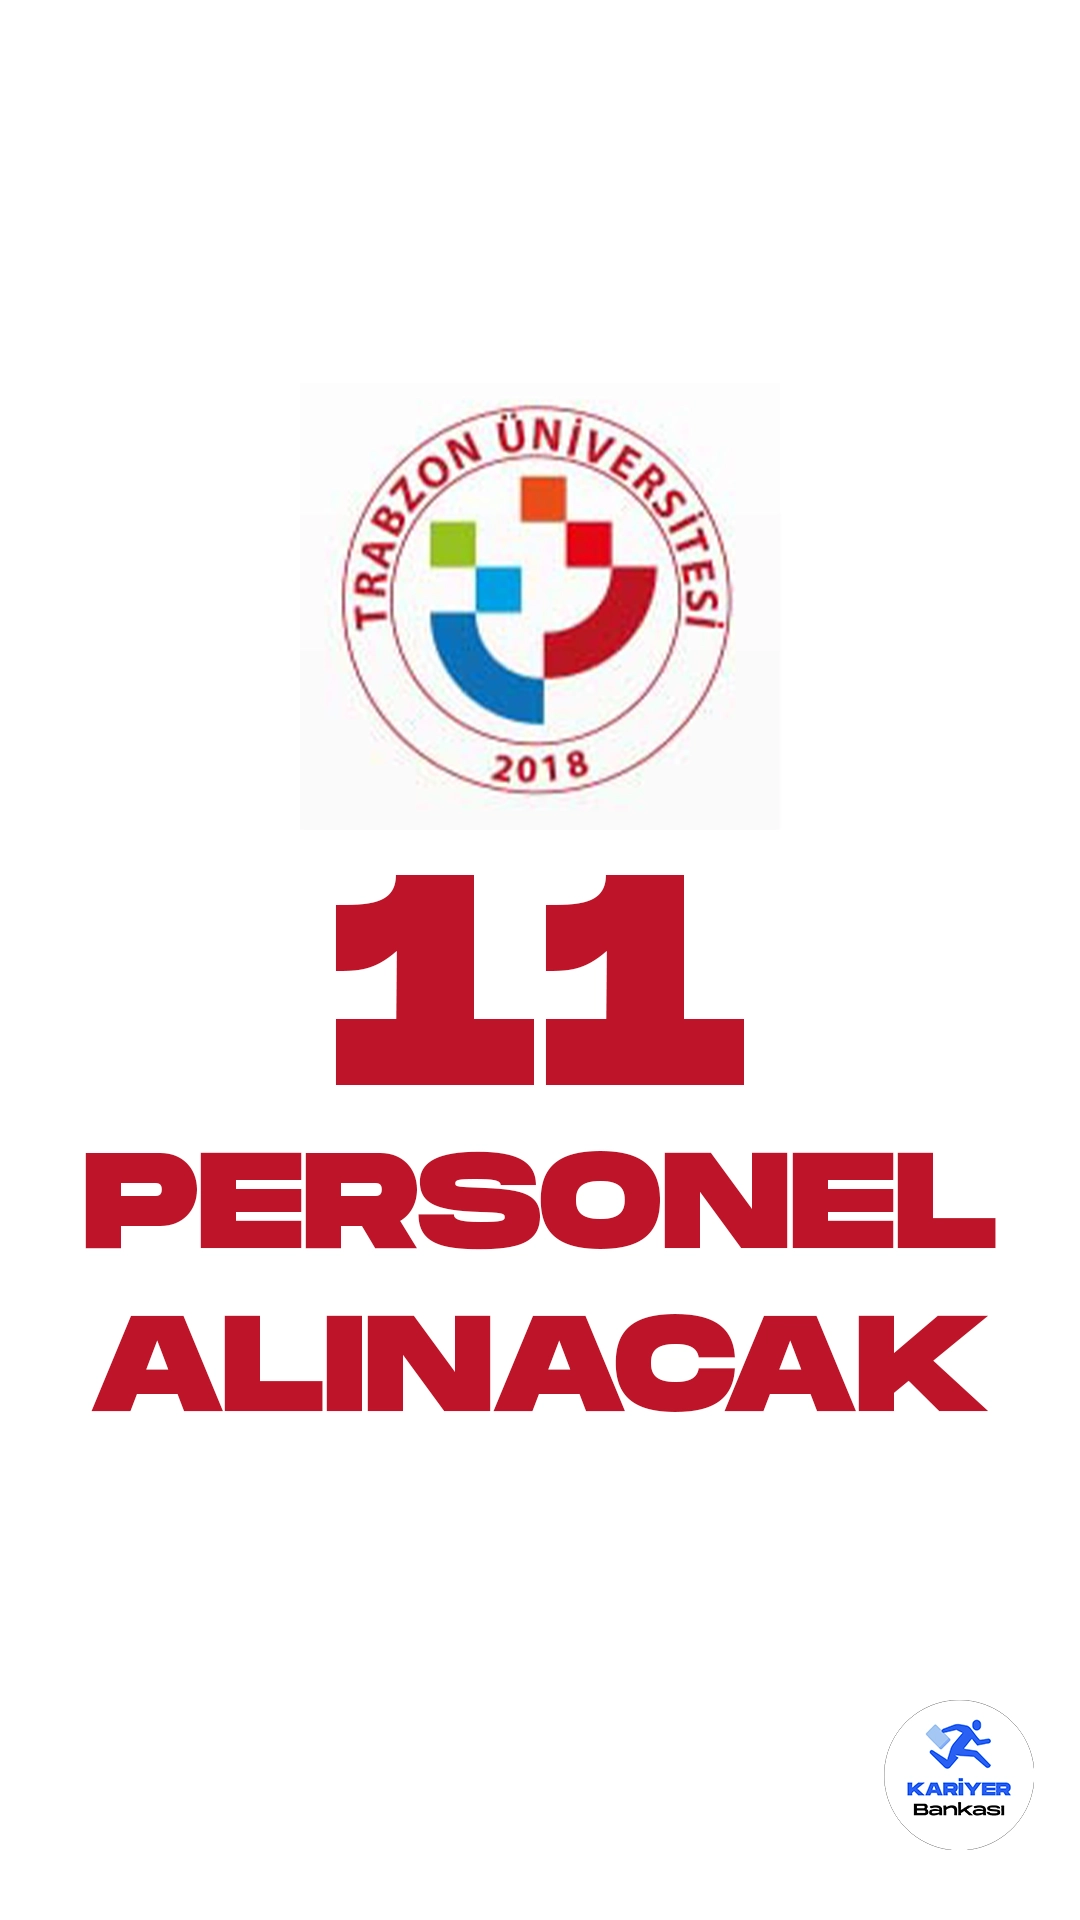 Trabzon Üniversitesi 11 Personel Alımı Yapacak. İlgili alım duyurusunda, Trabzon Üniversitesine büro personeli, destek personeli( temizlik görevlisi) ünvanlarında sözleşmeli personel alımı yapılacağı aktarıldı. Başvurular bugün(5 Aralık) itibarıyla alınacak.